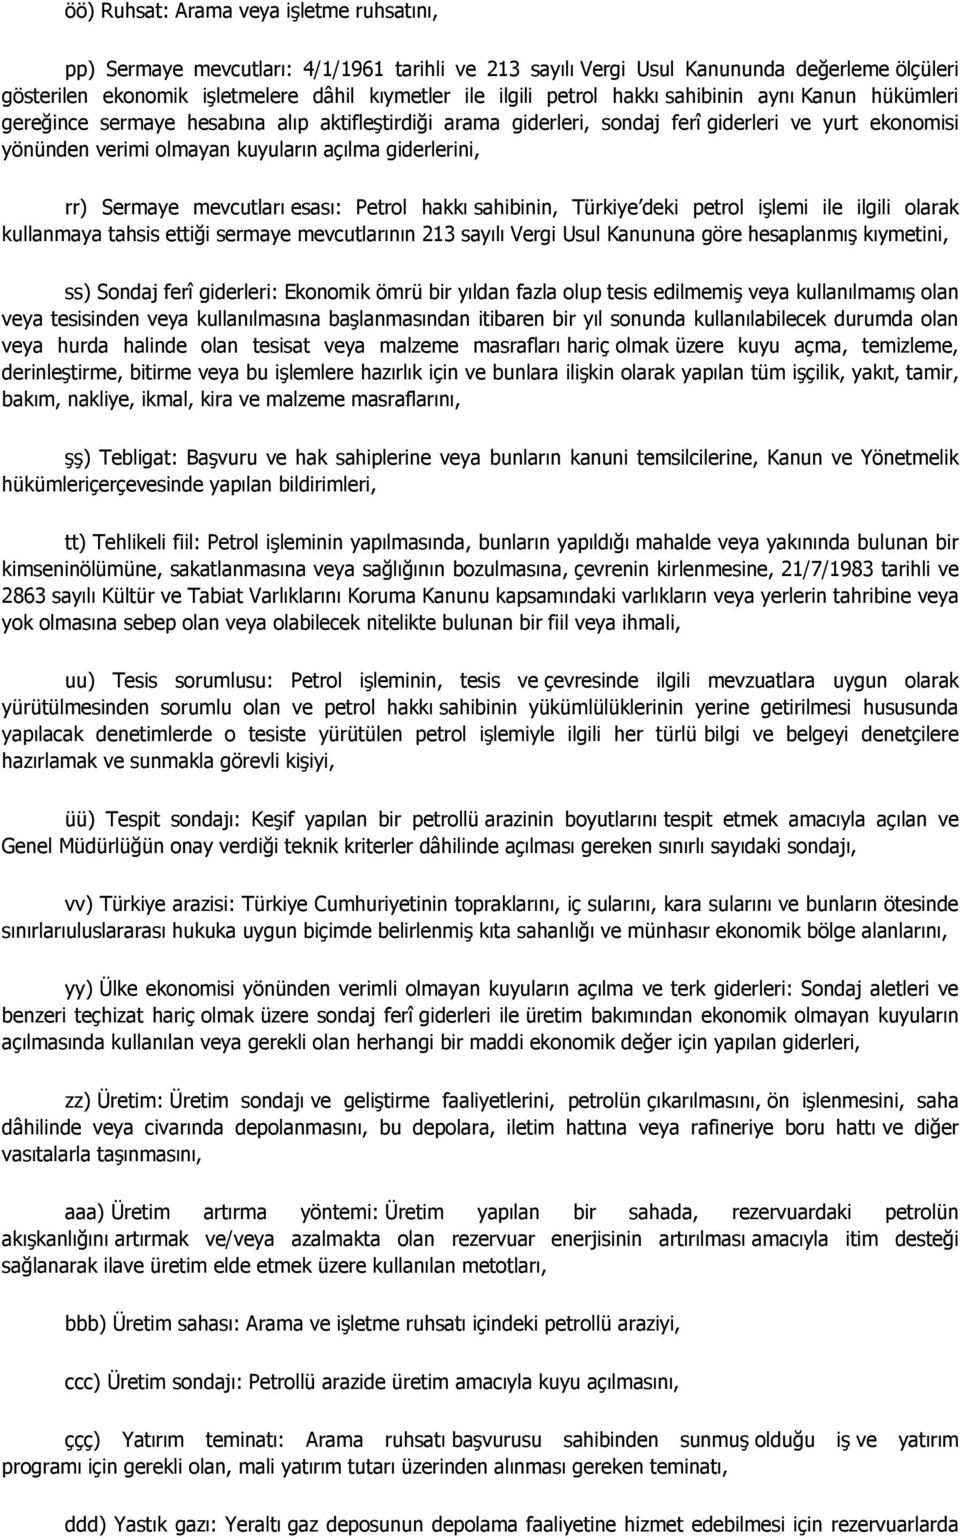 giderlerini, rr) Sermaye mevcutları esası: Petrol hakkı sahibinin, Türkiye deki petrol işlemi ile ilgili olarak kullanmaya tahsis ettiği sermaye mevcutlarının 213 sayılı Vergi Usul Kanununa göre